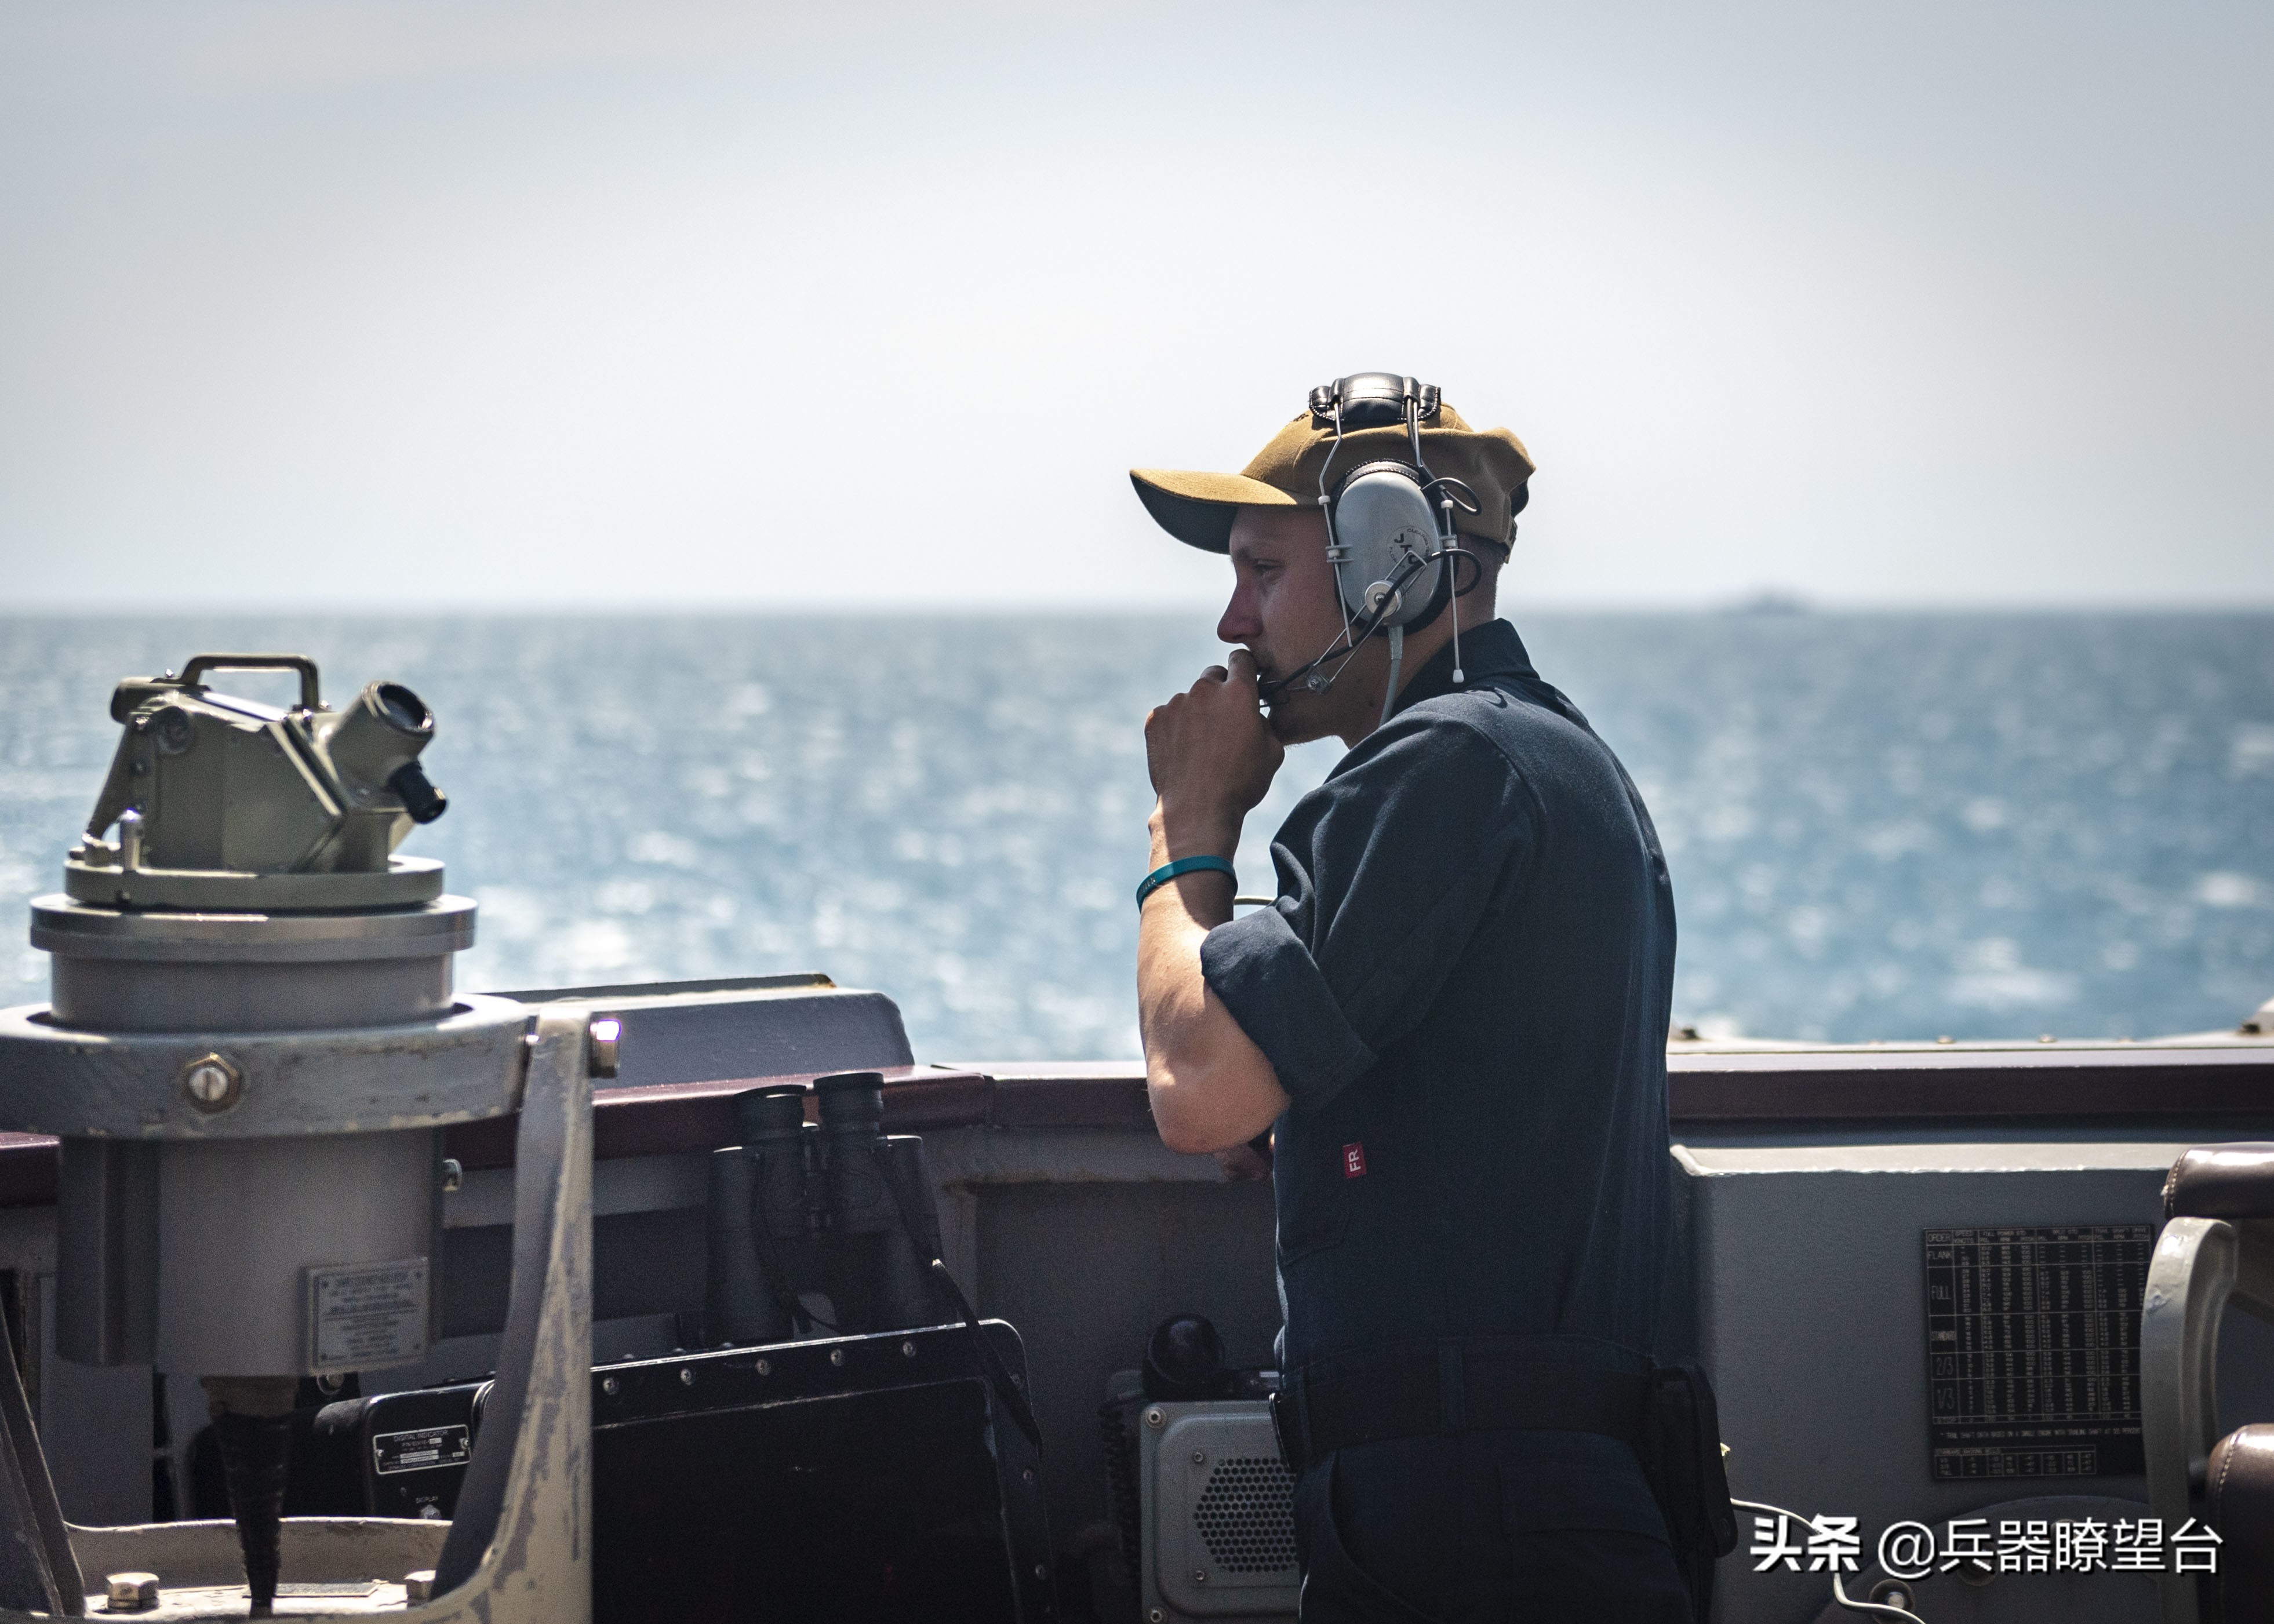 美驱逐舰穿越台湾海峡频繁起飞直升机：搜索中国潜艇摸清海底山脉